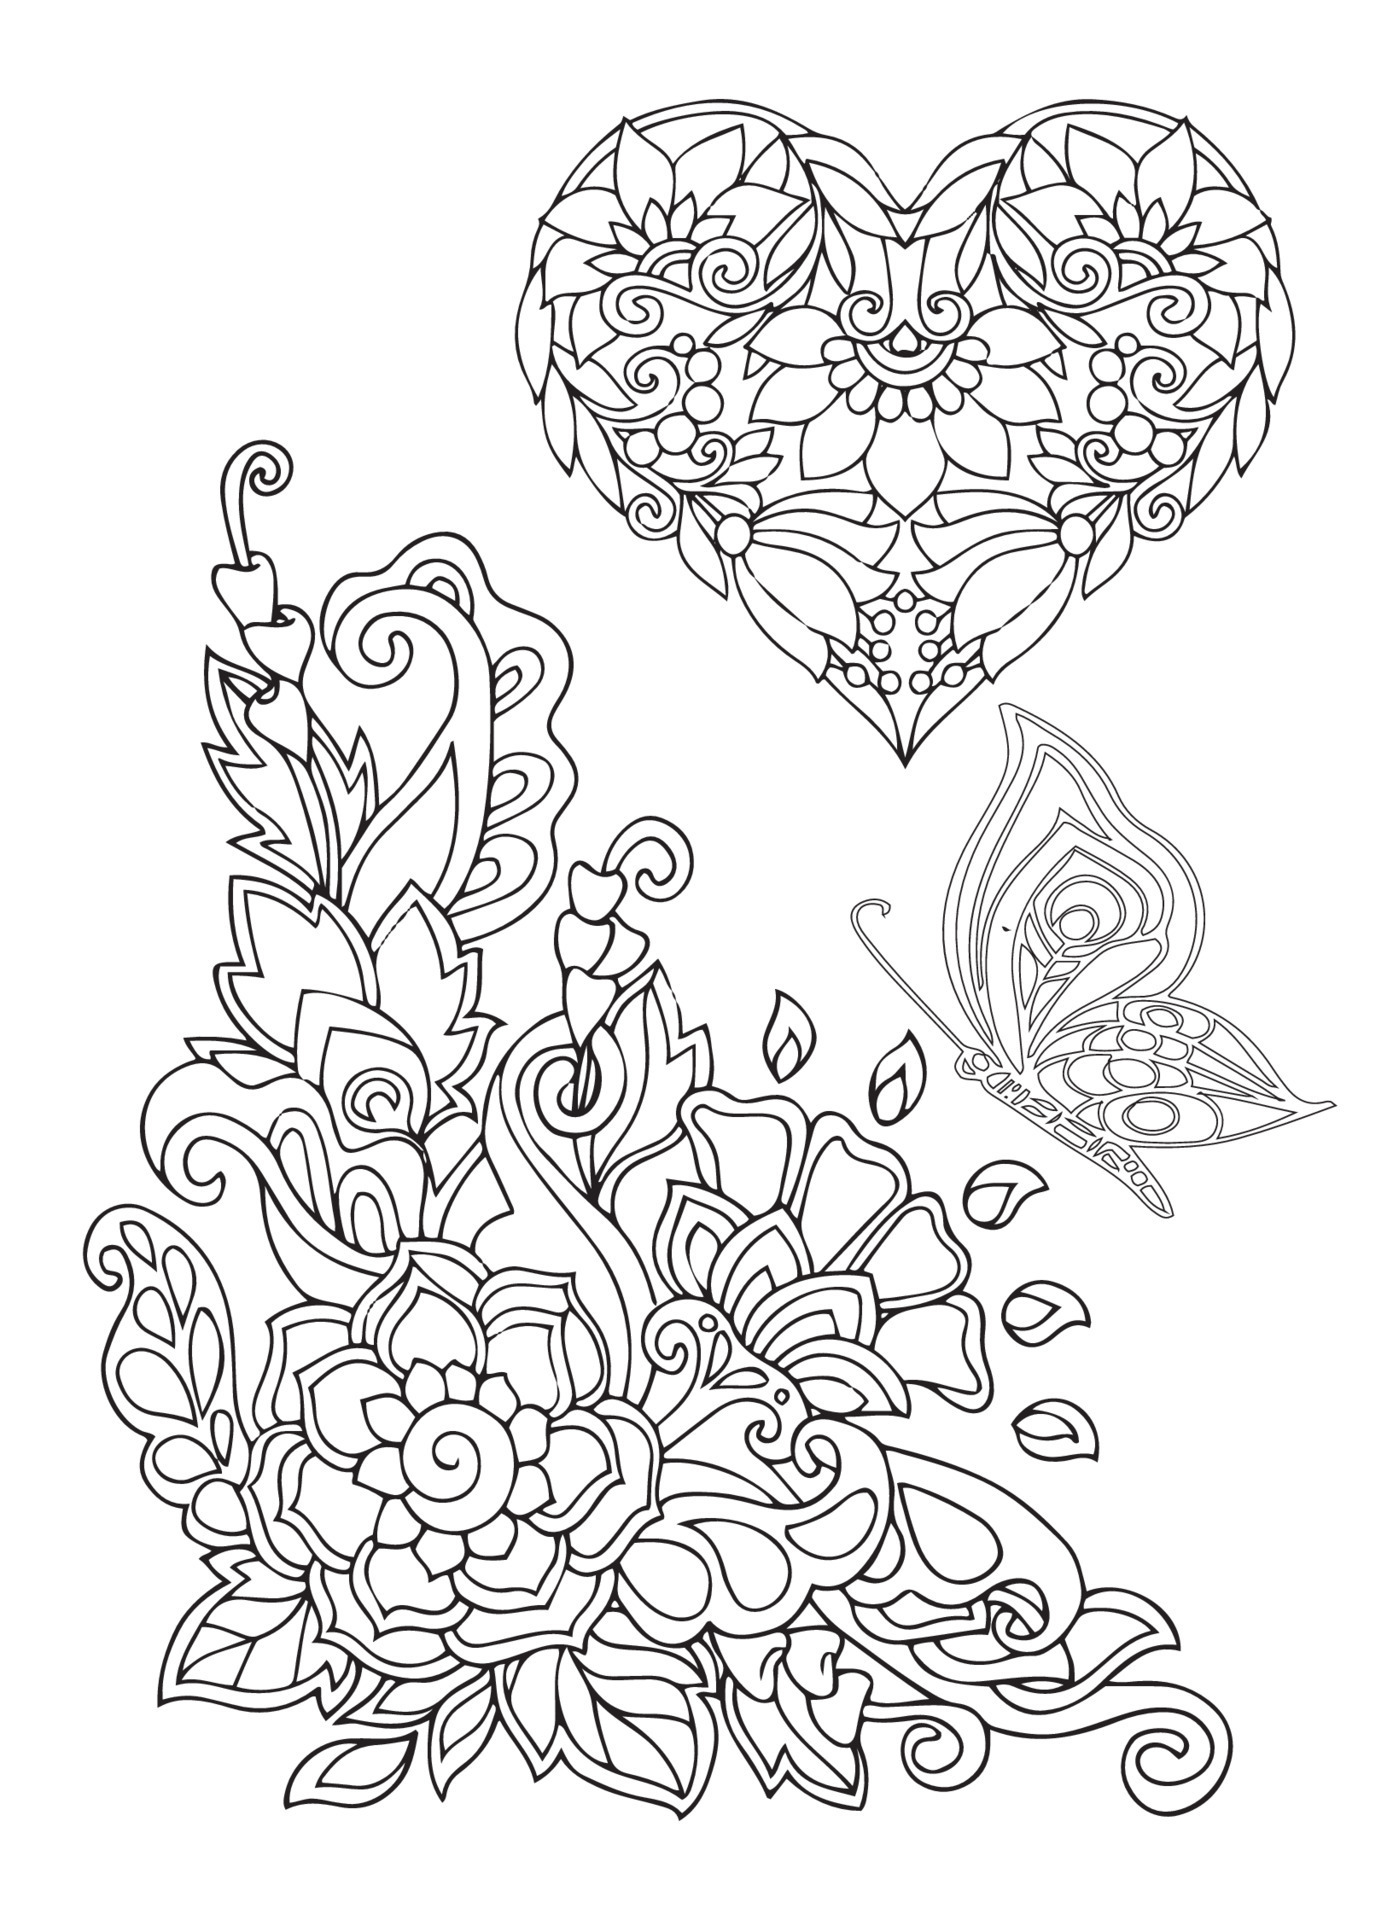 Desenhos para Adultos de Coração para Colorir - Imprimir A4